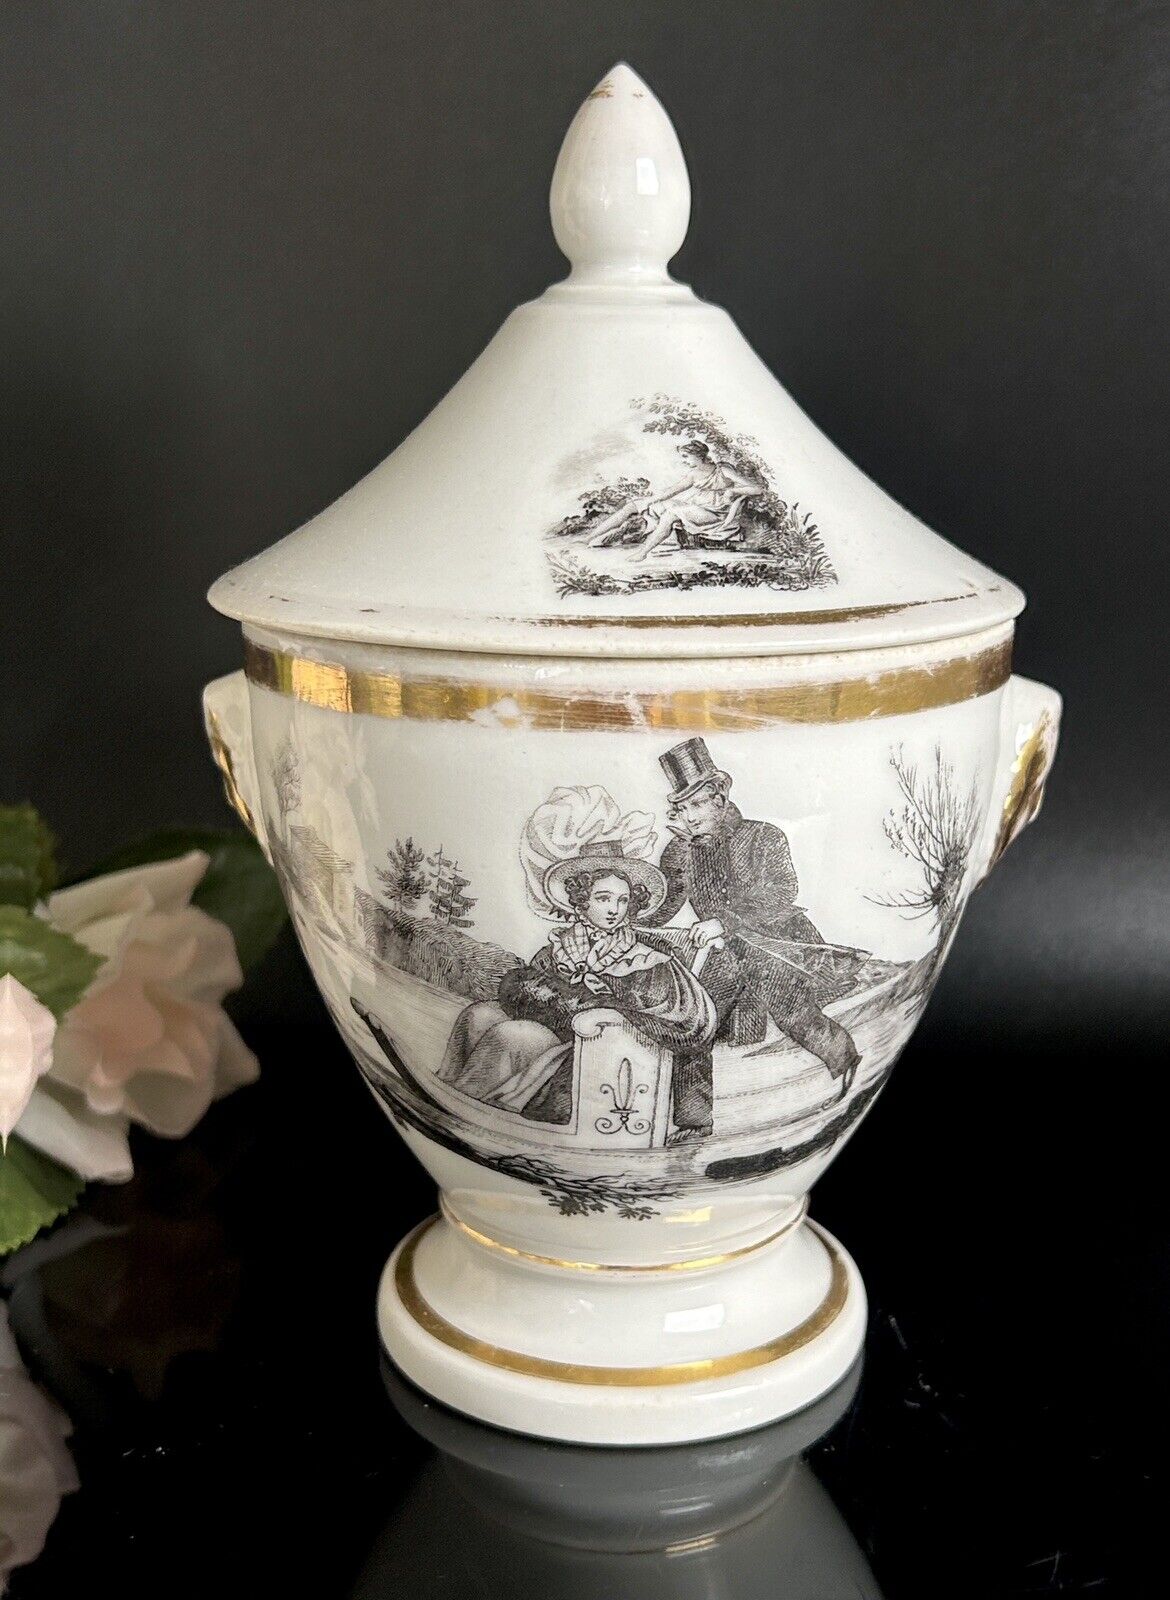 Antique Paris Porcelain Grisaille Sugar Bowl Lidded c1800-1830 7.5”H